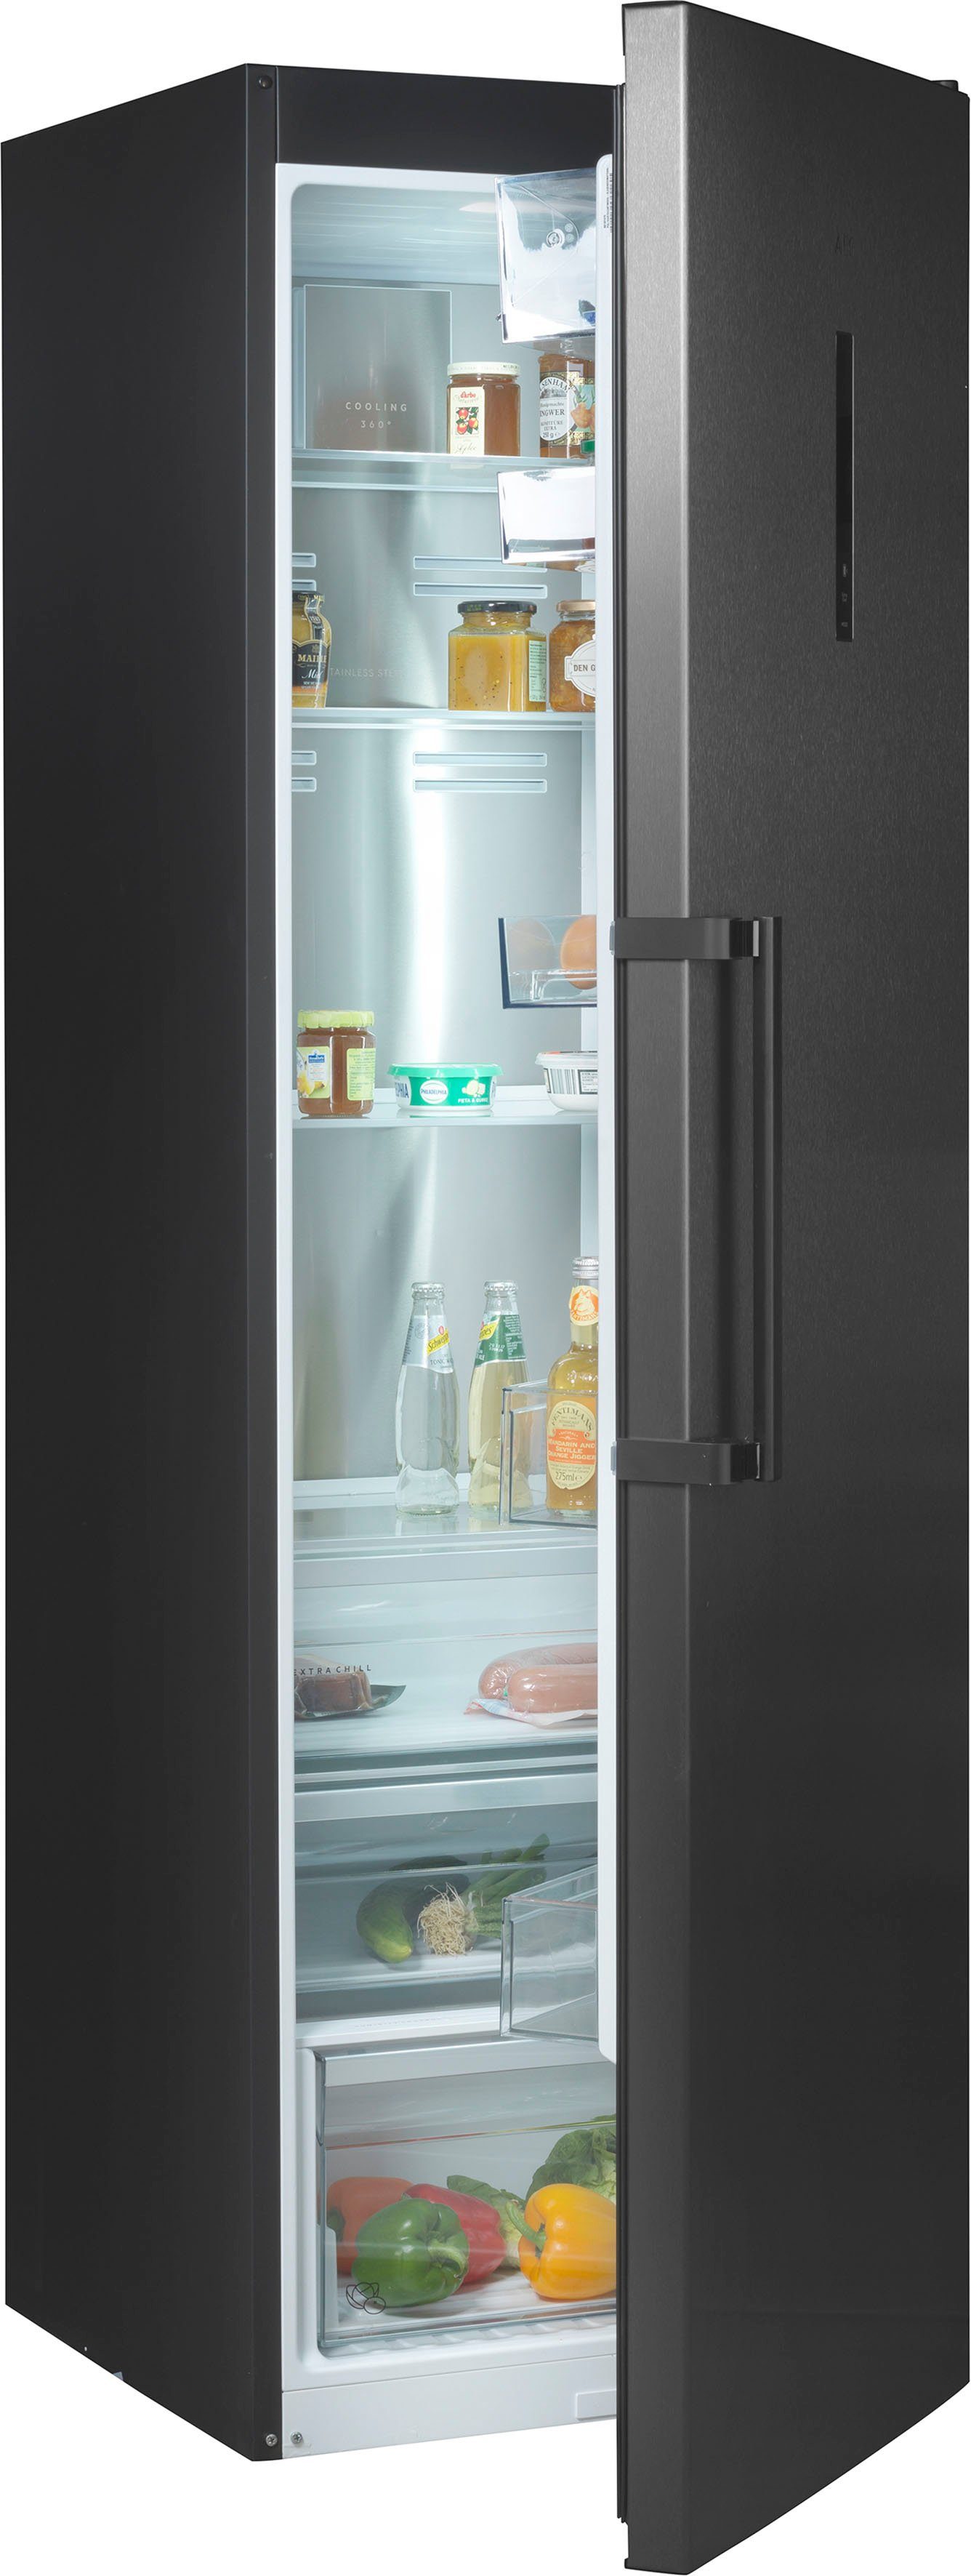 Liebherr Standkühlschränke online kaufen | OTTO